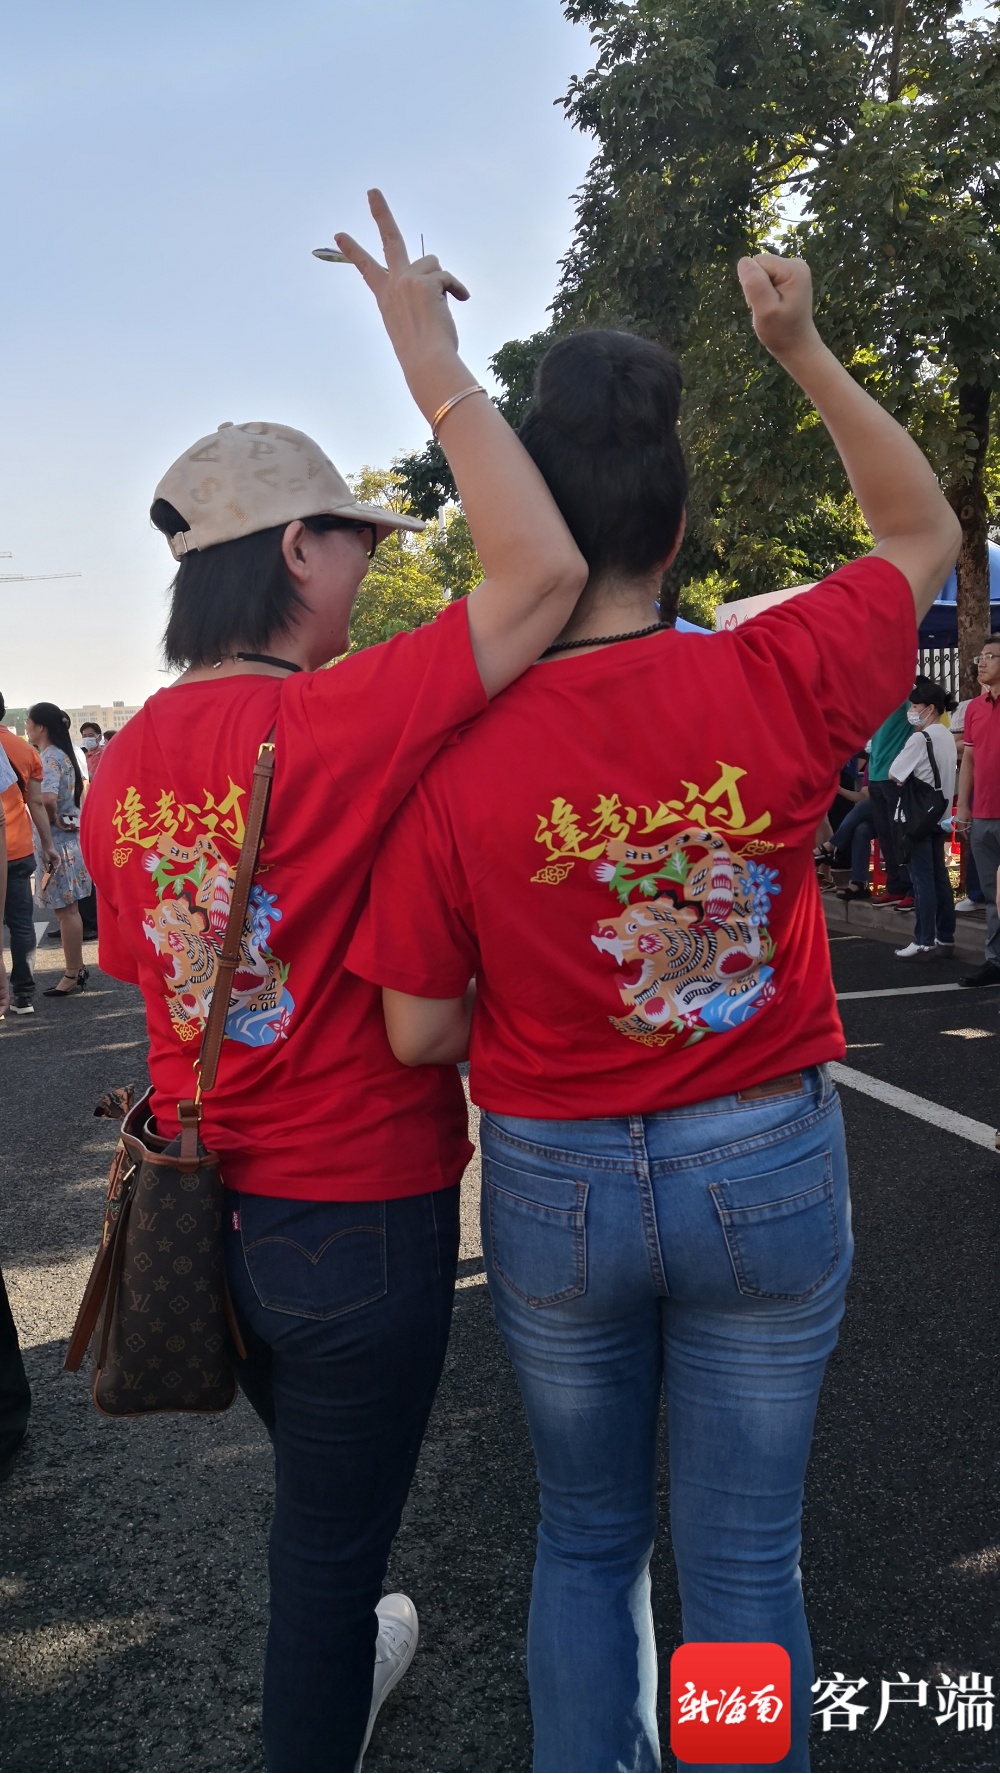 海口两位妈妈穿“逢考必胜”红T恤 以别样方式为考生加油